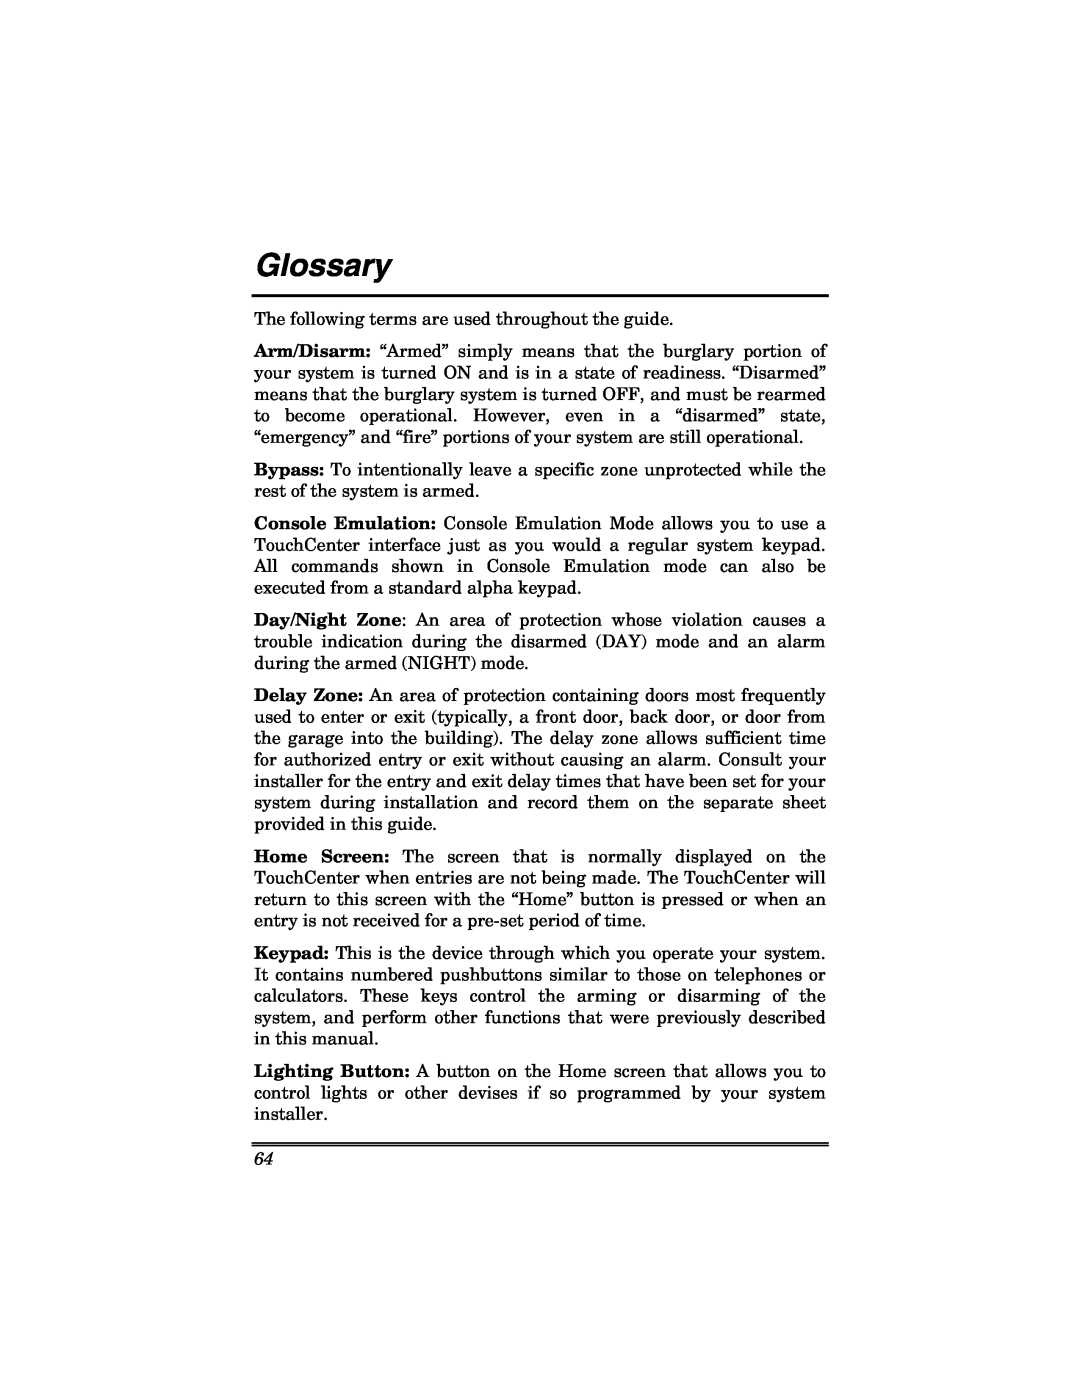 Honeywell 6271V manual Glossary 